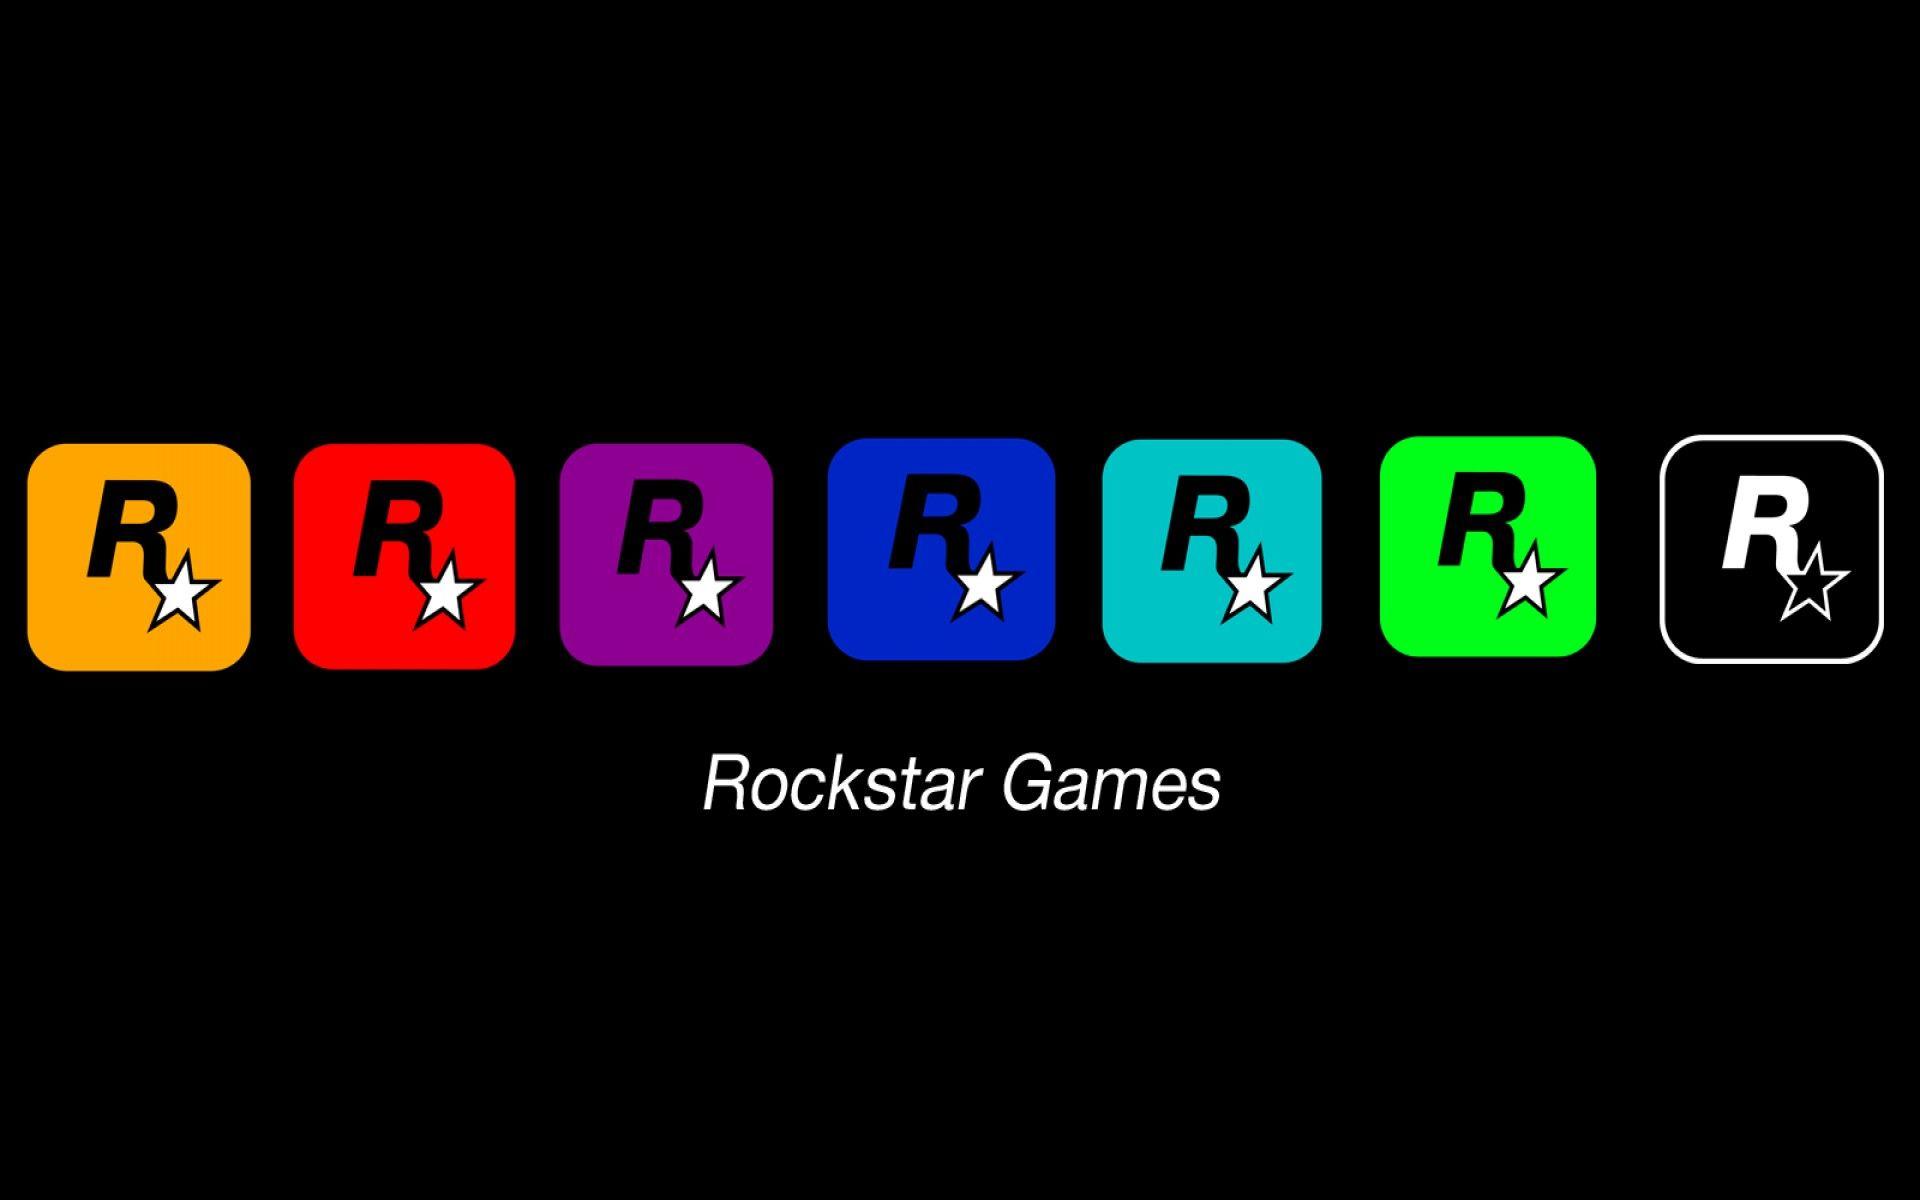 Rockstar games logos wallpaper. PC